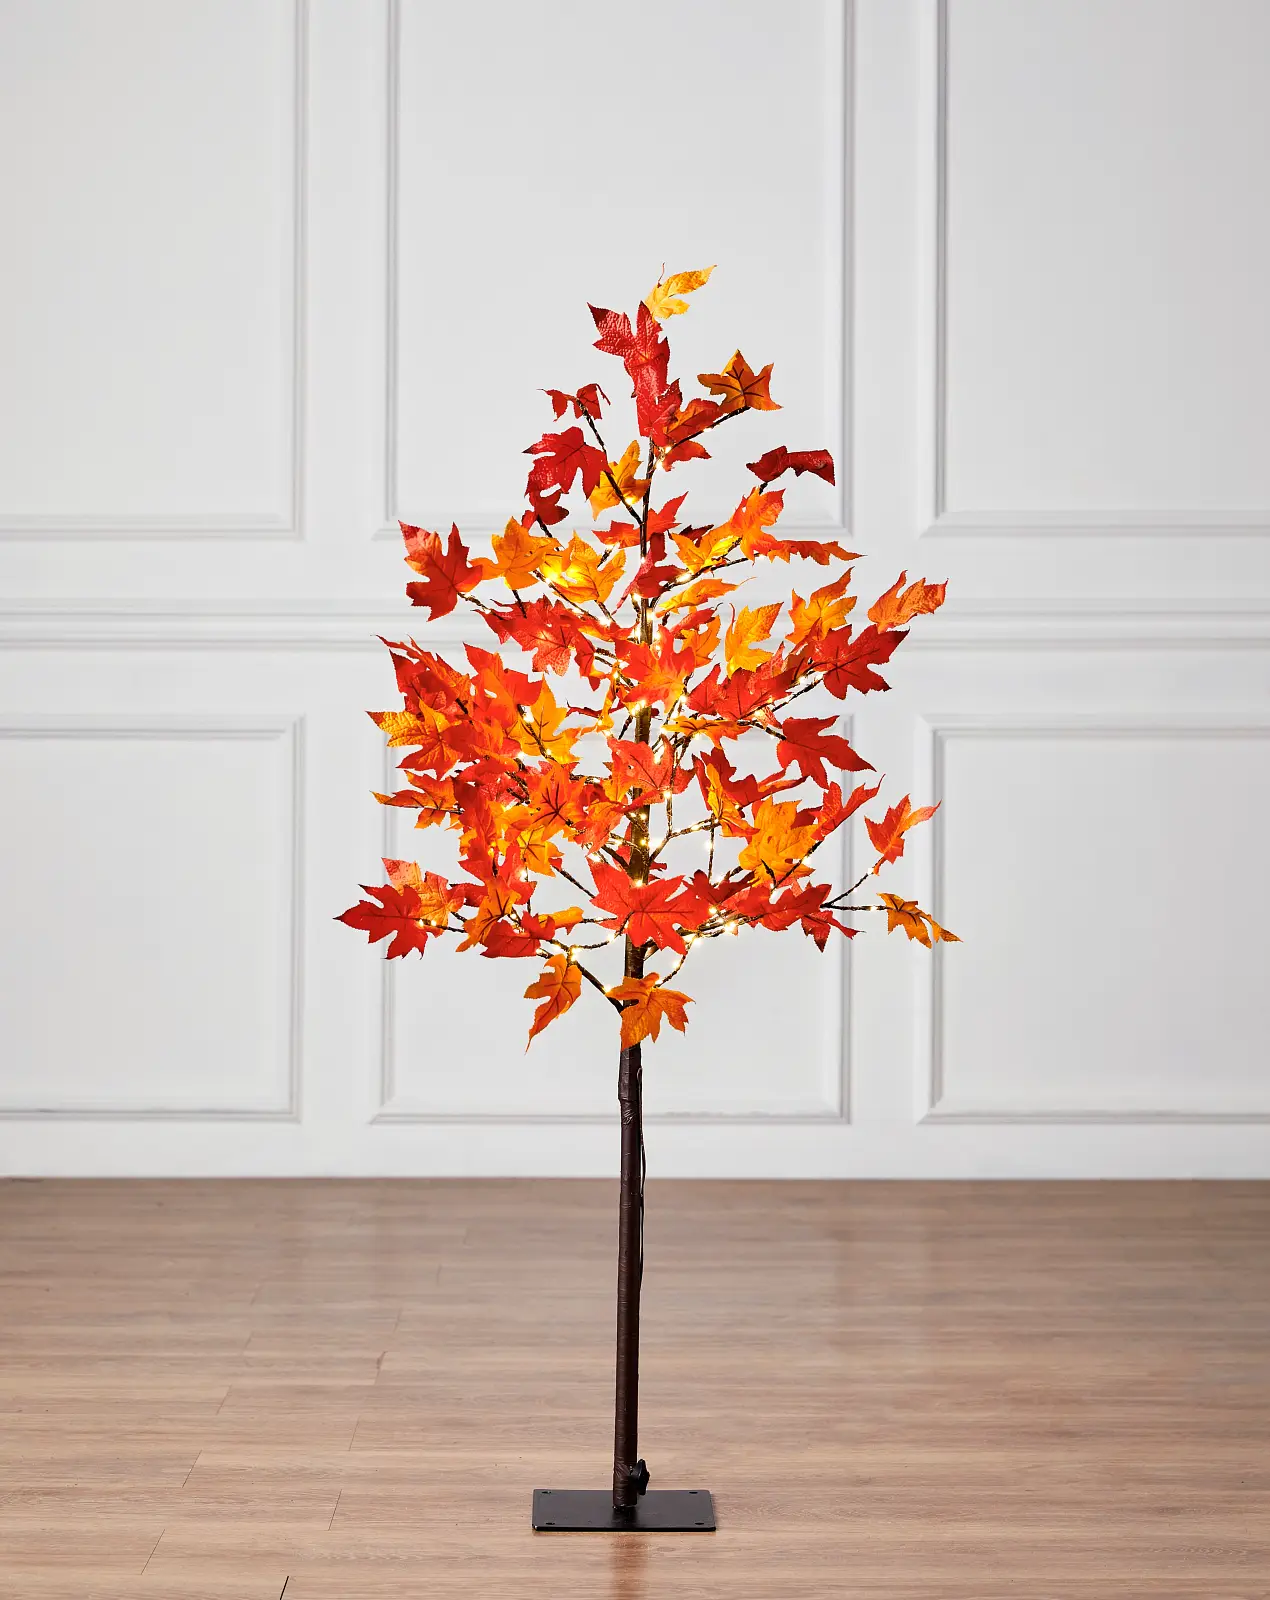 Leugen Verstrikking engel Outdoor LED Artificial Autumn Maple Tree | Balsam Hill